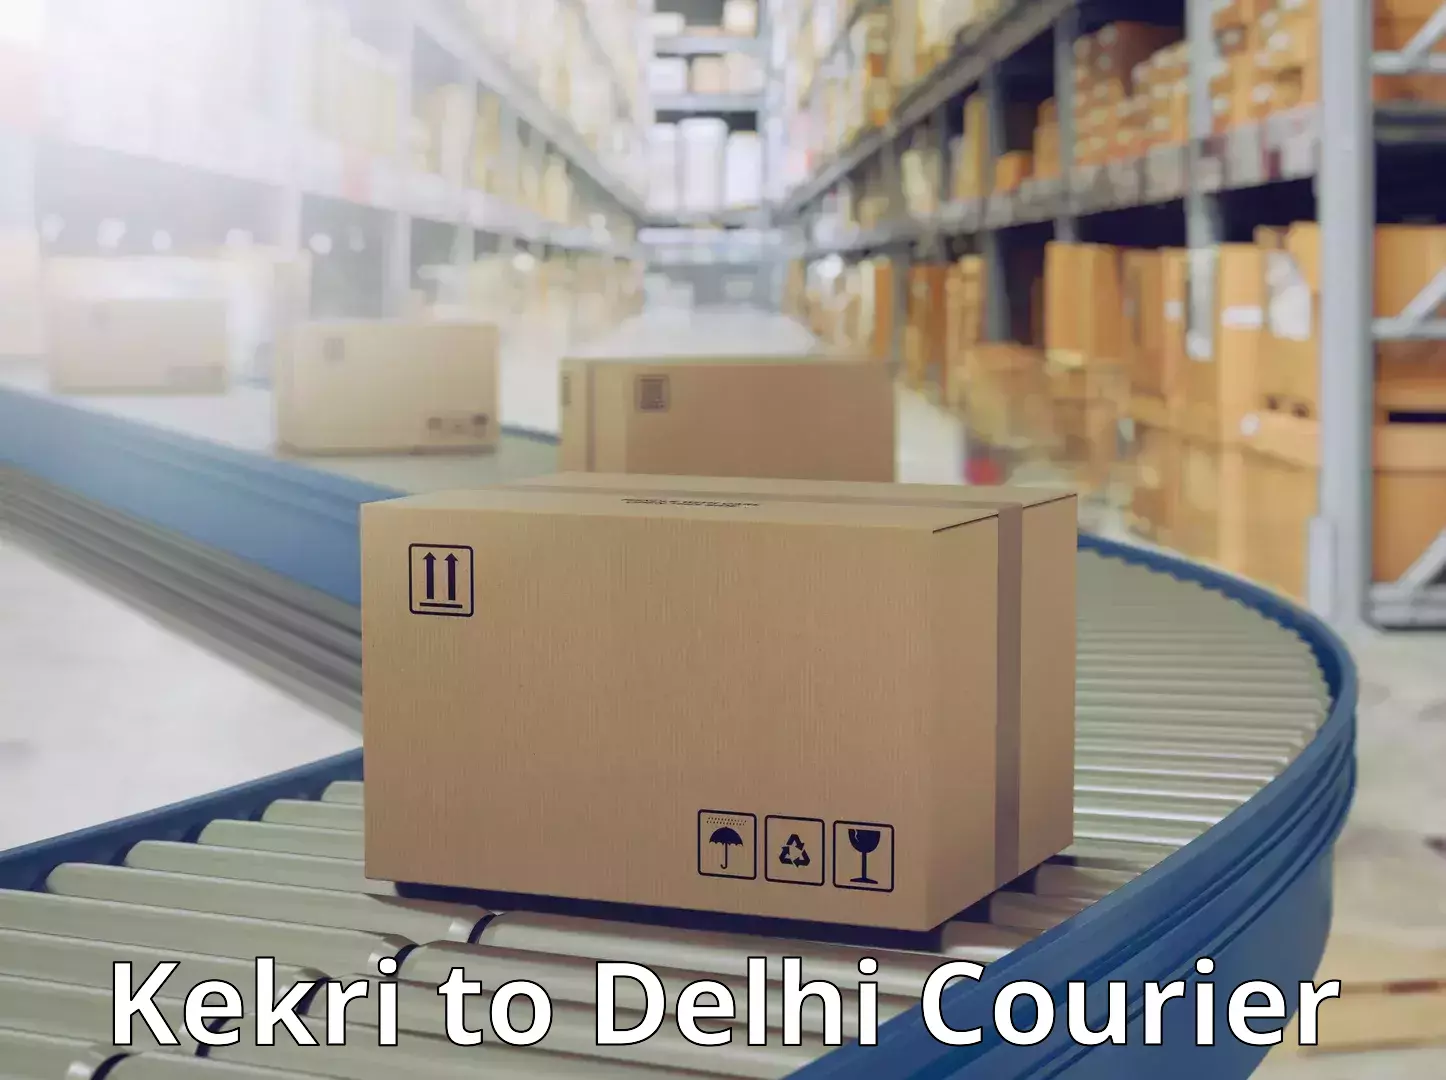 Courier service comparison in Kekri to University of Delhi